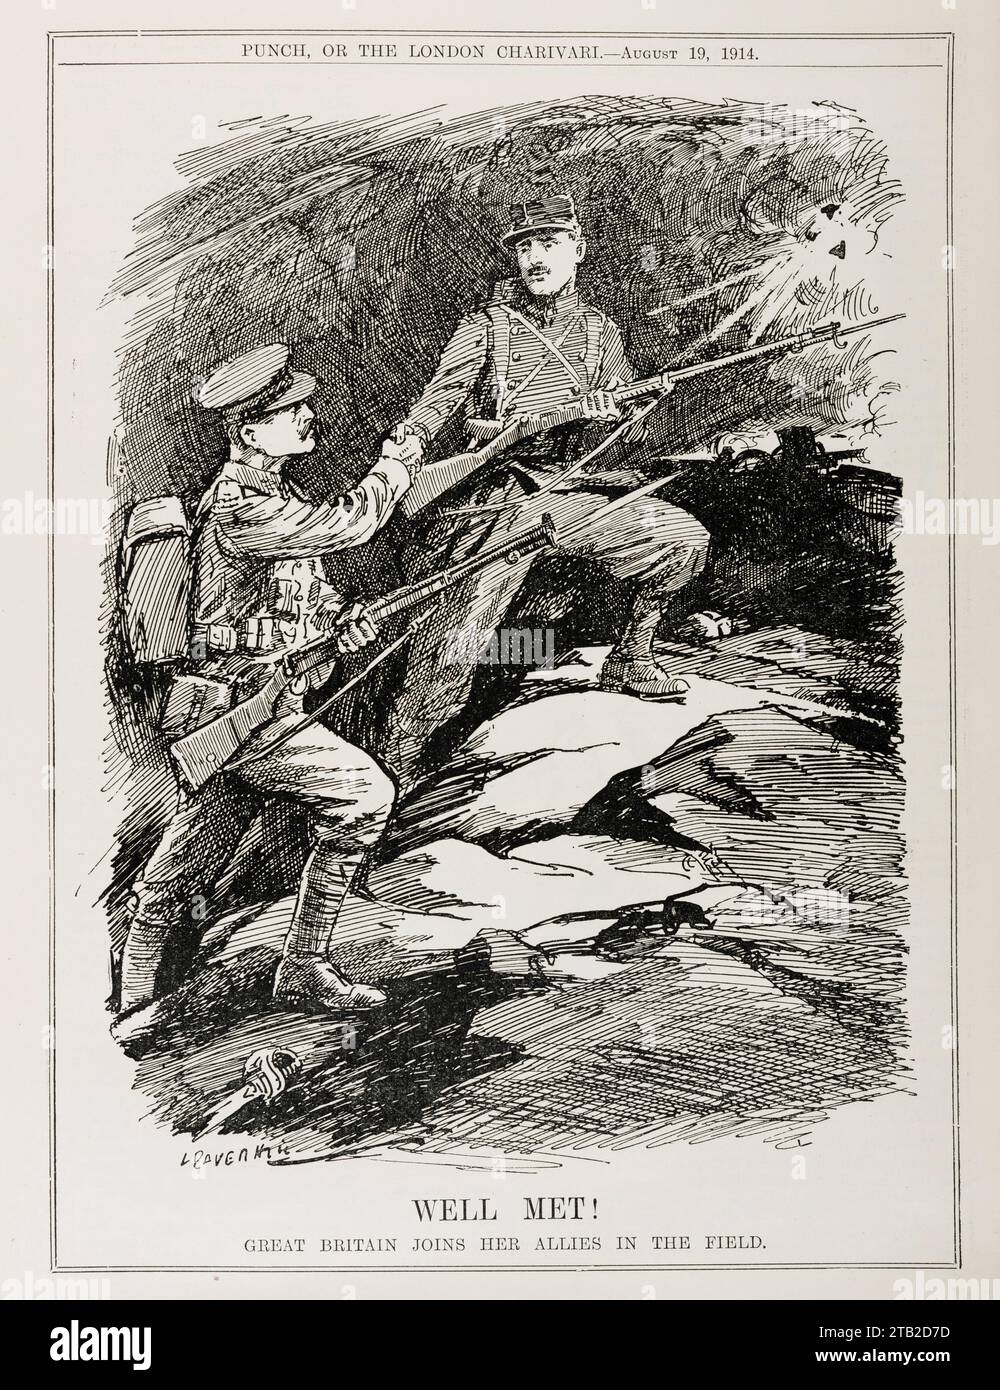 Ein Comic vom August 1914 aus dem Magazin Punch, der die Kriegserklärung Großbritanniens gegen Deutschland (4. August 1914) und den anschließenden Eintritt in den Ersten Weltkrieg markiert. Ein britischer Soldat begrüßt einen französischen Soldaten an der Westfront Stockfoto